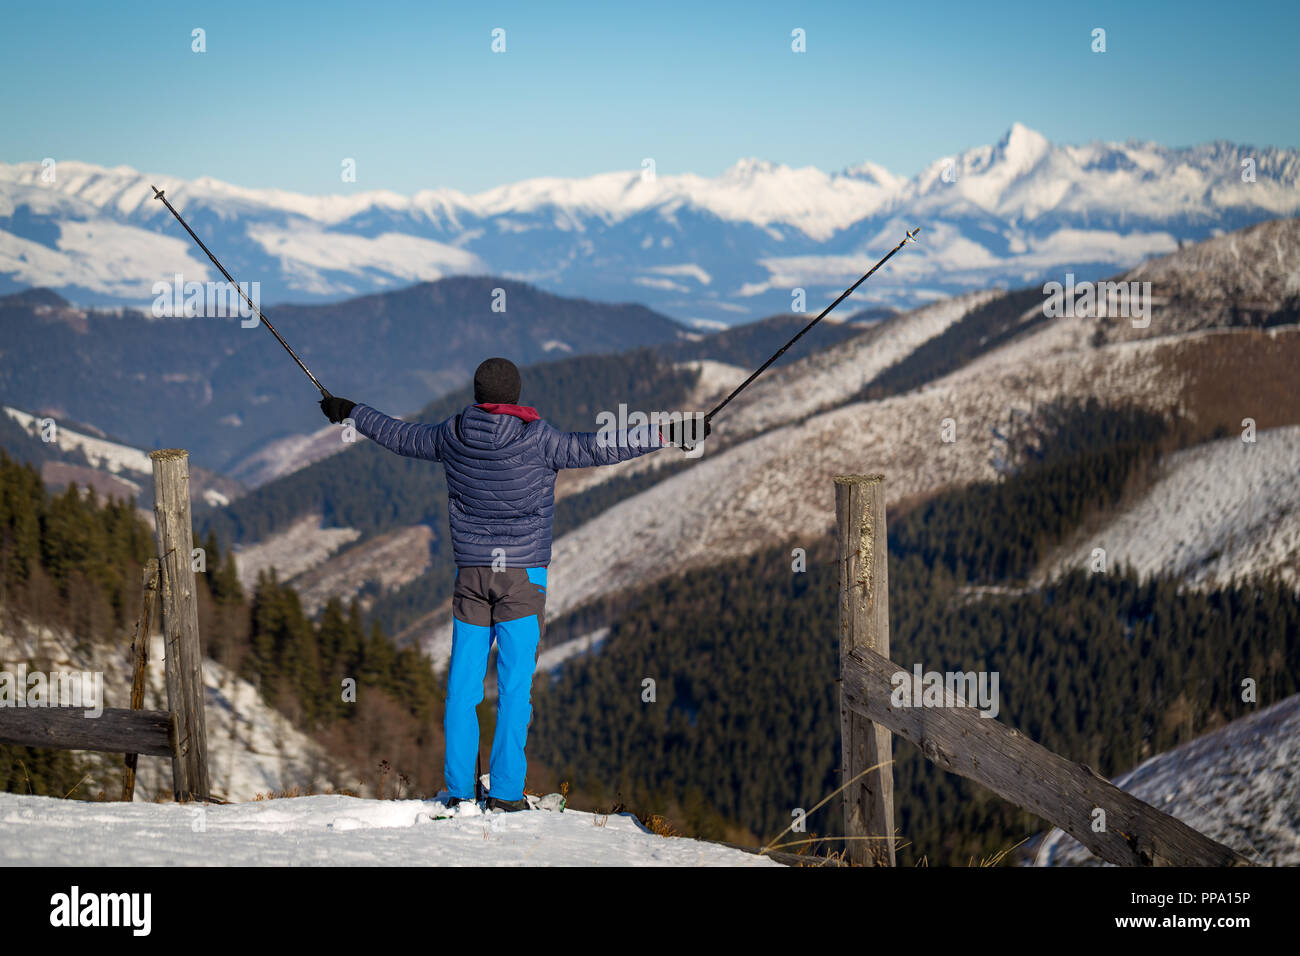 Passeggiate sulla neve con le racchette da neve con vista sulle cime innevate sullo sfondo. Foto Stock